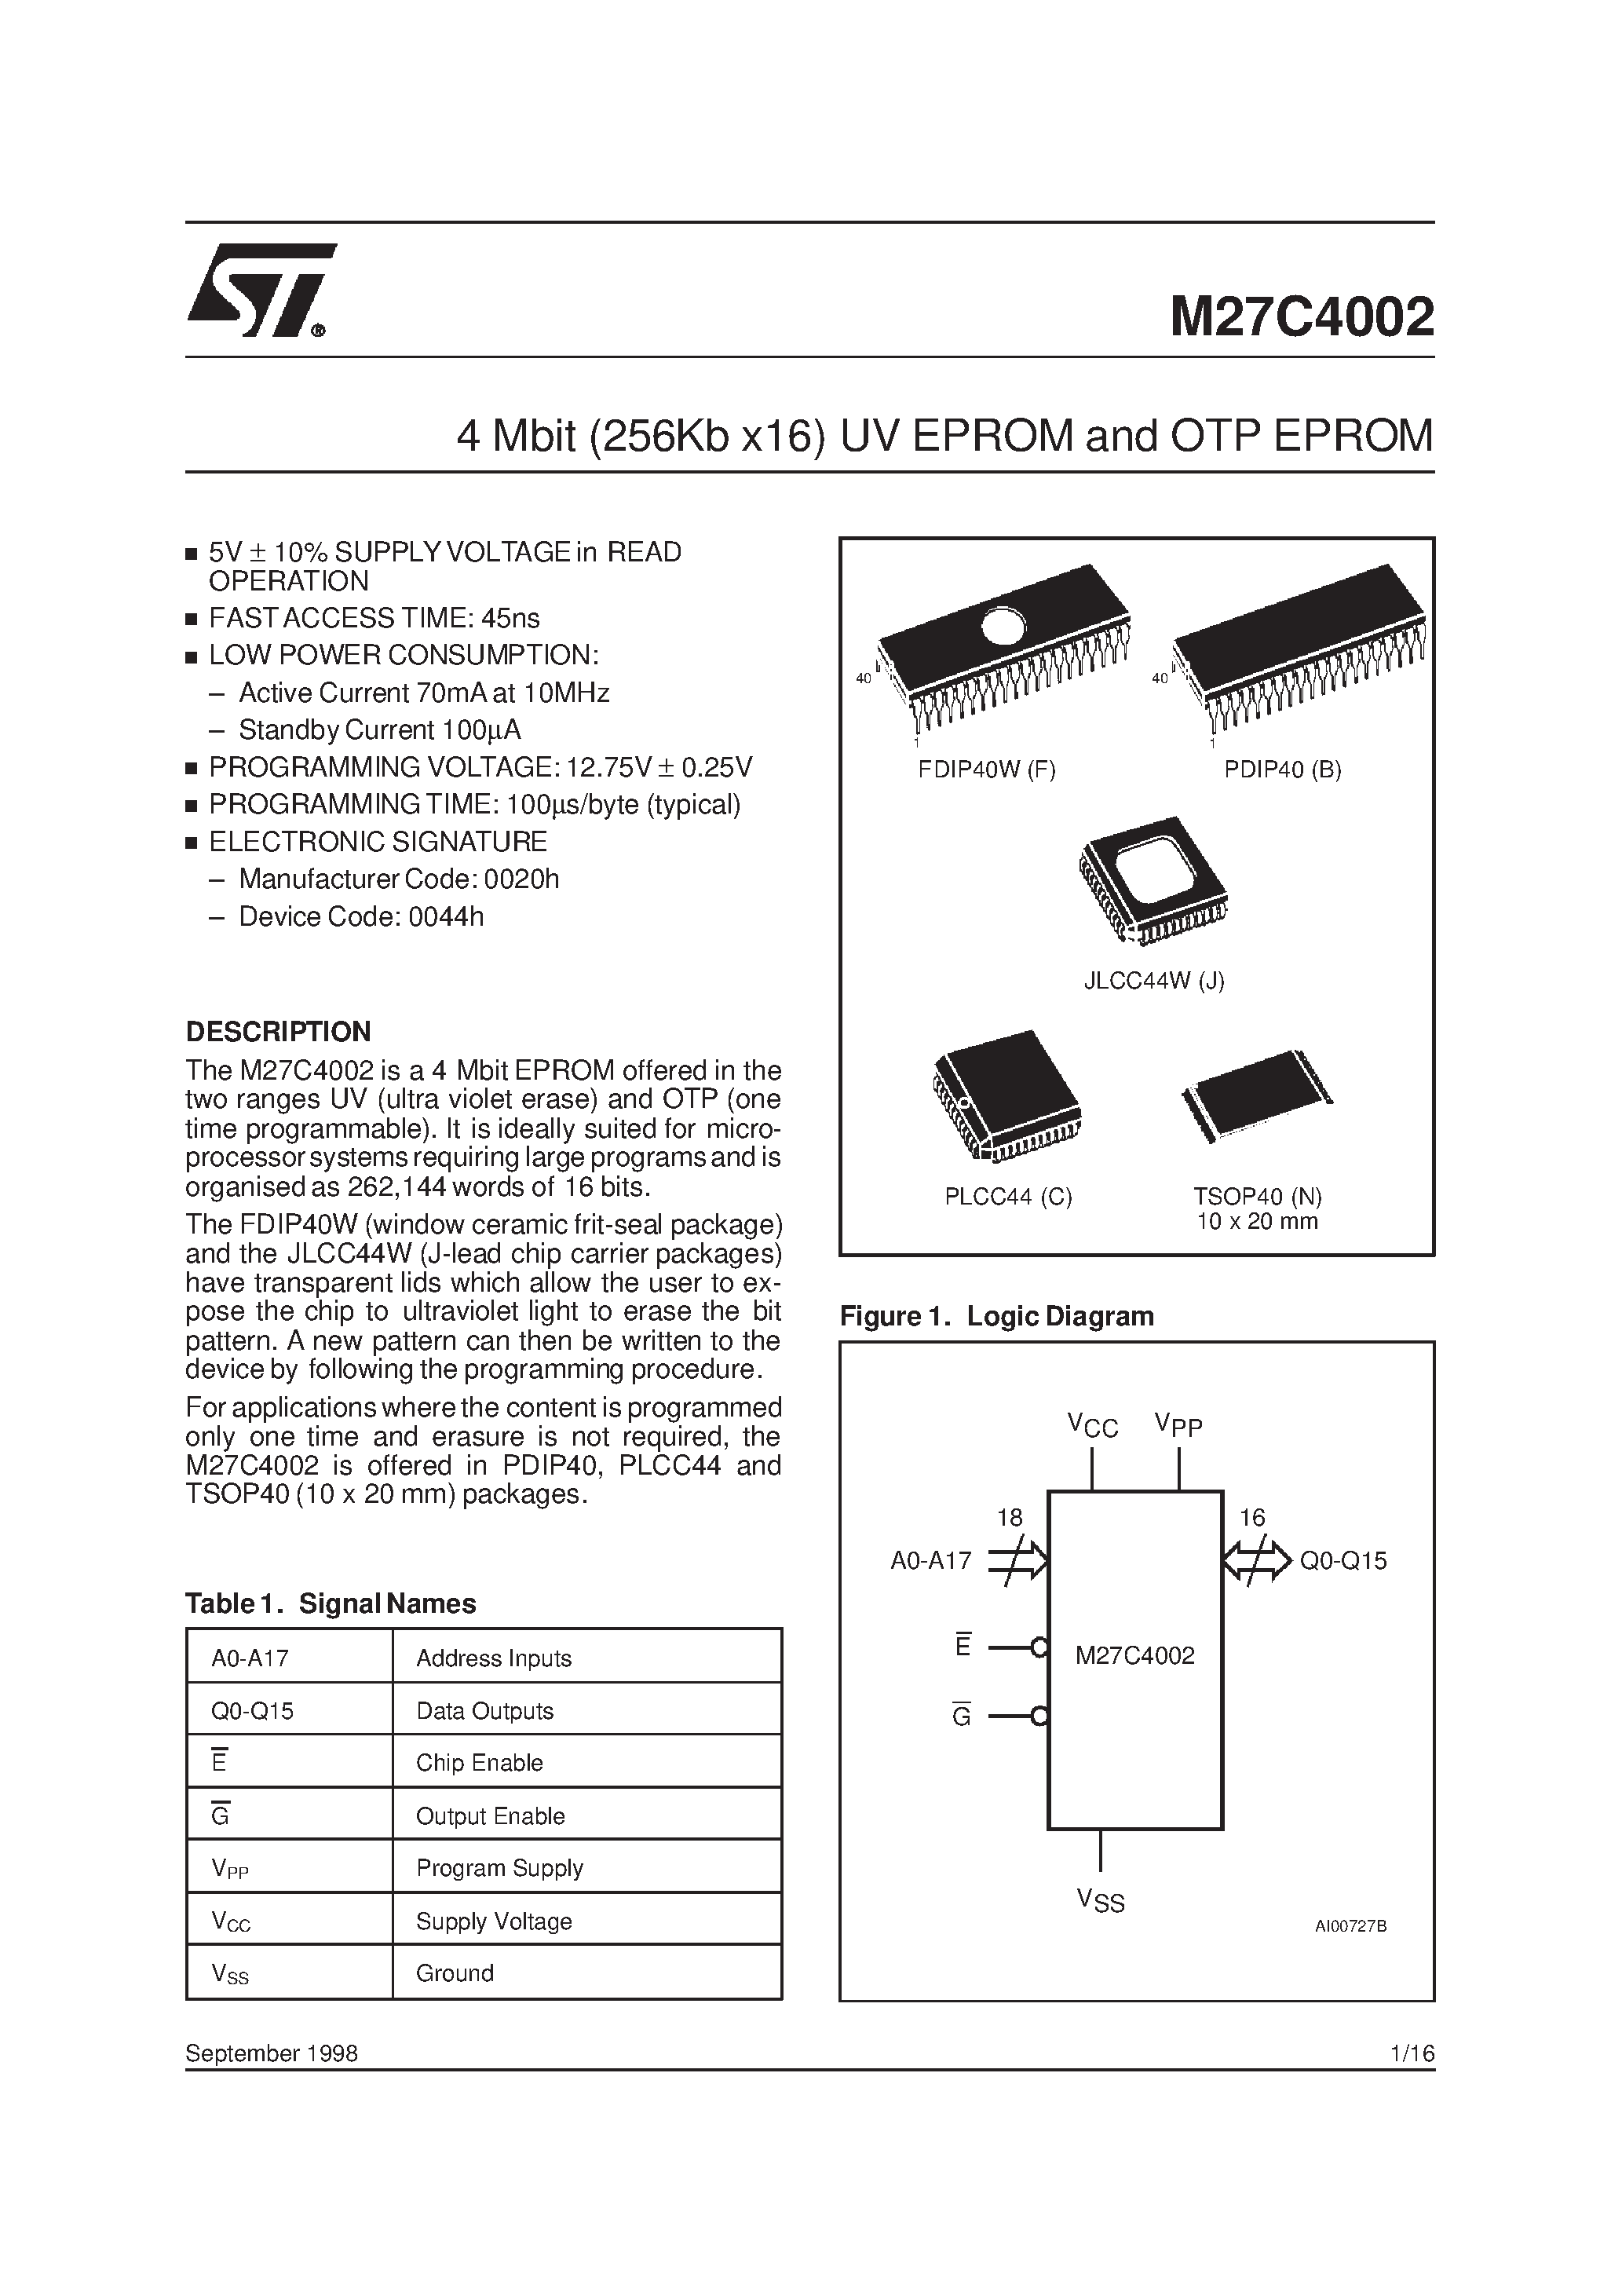 Datasheet M27C4002-10XF6X - 4 Mbit 256Kb x16 UV EPROM and OTP EPROM page 1